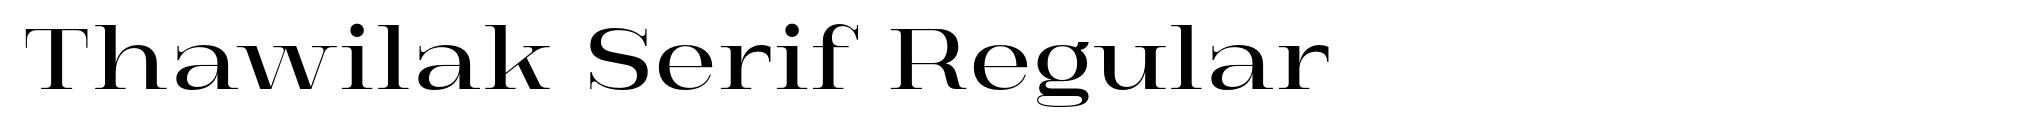 Thawilak Serif Regular image